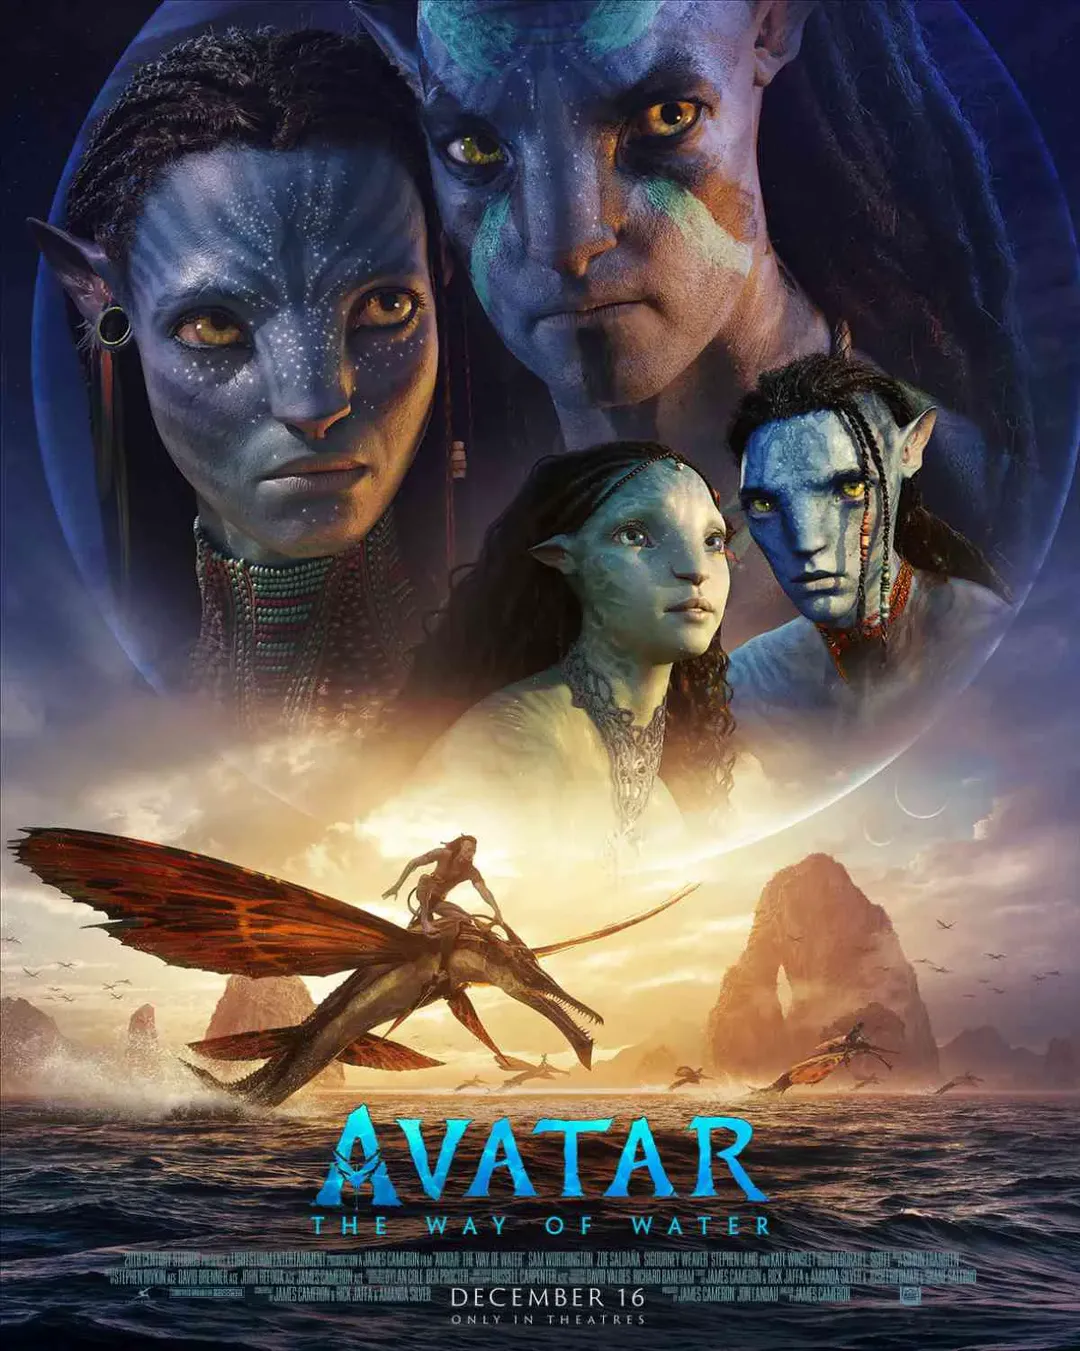 Avatar Doanh thu - Highest Grossing Bollywood Film - đã trở lại trong một hình thức hoàn toàn mới, đắm mình trong sức hút của các ngôi sao hạng A và câu chuyện cảm động ẩn sau màn hình. Khám phá doanh thu trên toàn cầu và cảm nhận mọi cung bậc cảm xúc của bộ phim trên trang web chính thức của Avatar!